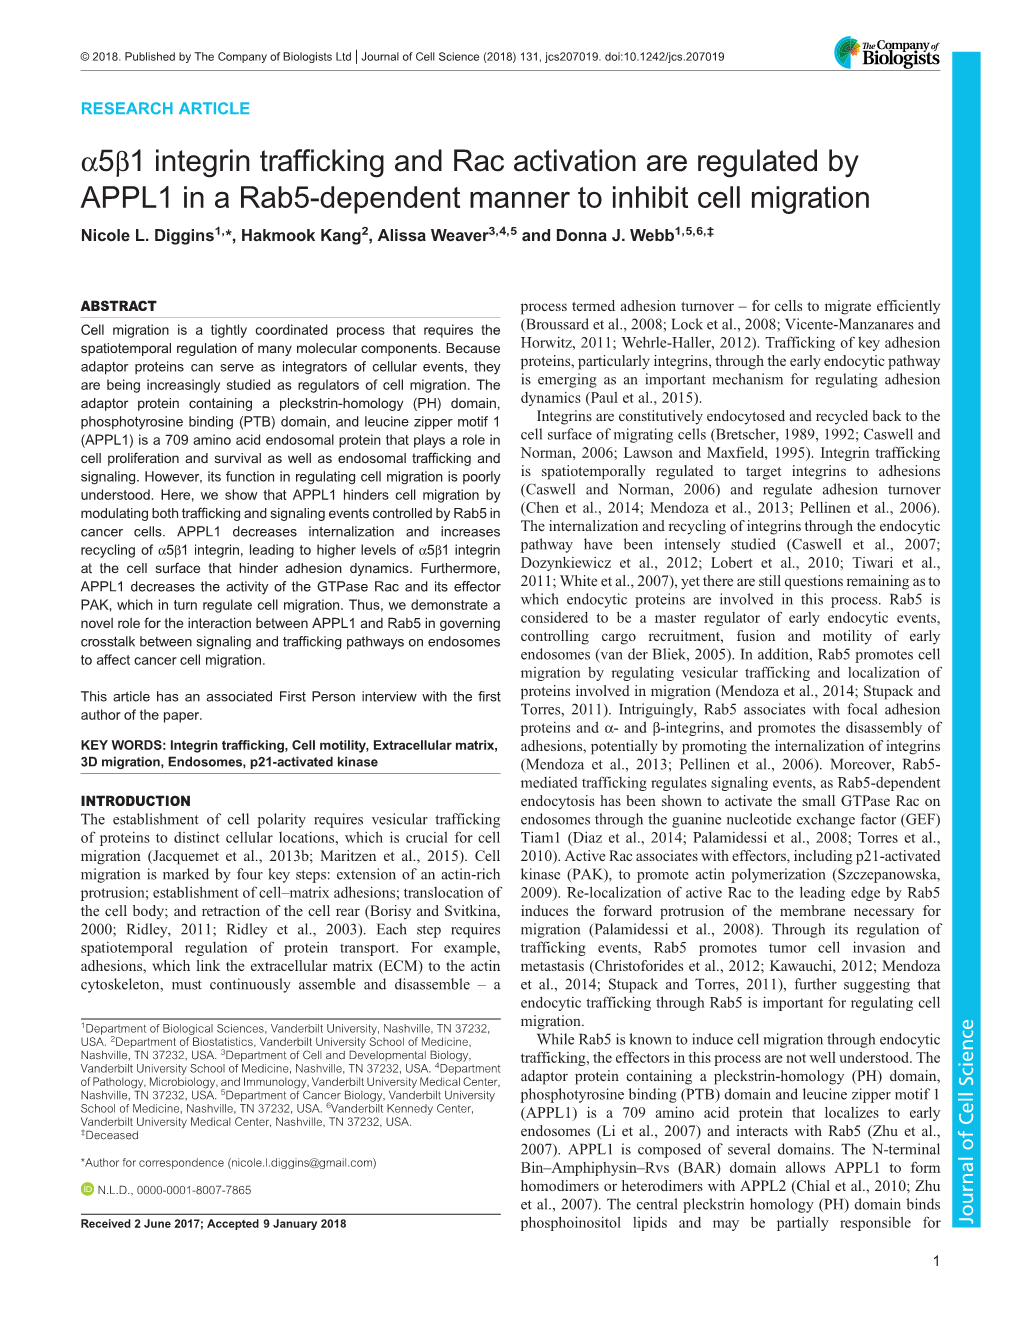 Α5β1 Integrin Trafficking and Rac Activation Are Regulated by APPL1 in a Rab5-Dependent Manner to Inhibit Cell Migration Nicole L